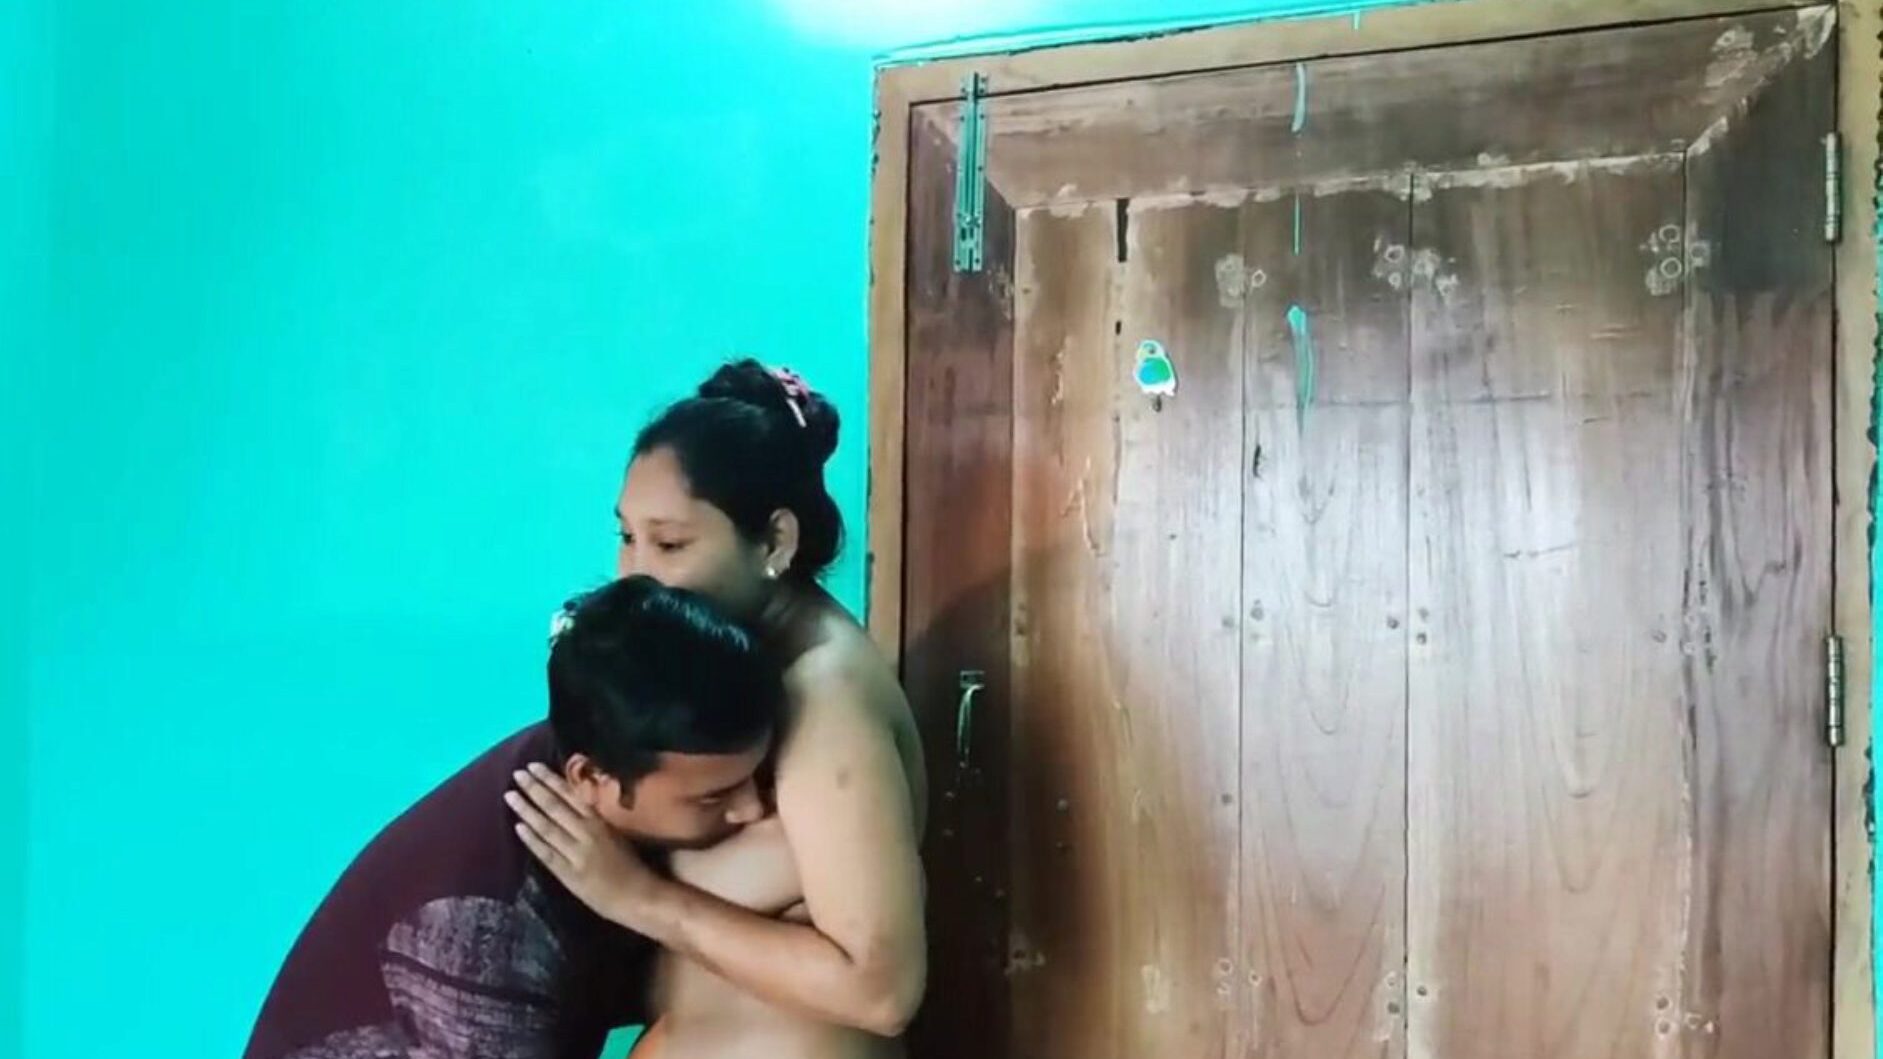 video di sesso bengalese desi nudo, porno asiatico gratuito 6c: xhamster guarda l'episodio nudo di video di sesso bengalese desi su xhamster, la risorsa web più grassa del tubo del sesso hd con tonnellate di sesso xxn asiatico gratis e video di pornografia anale